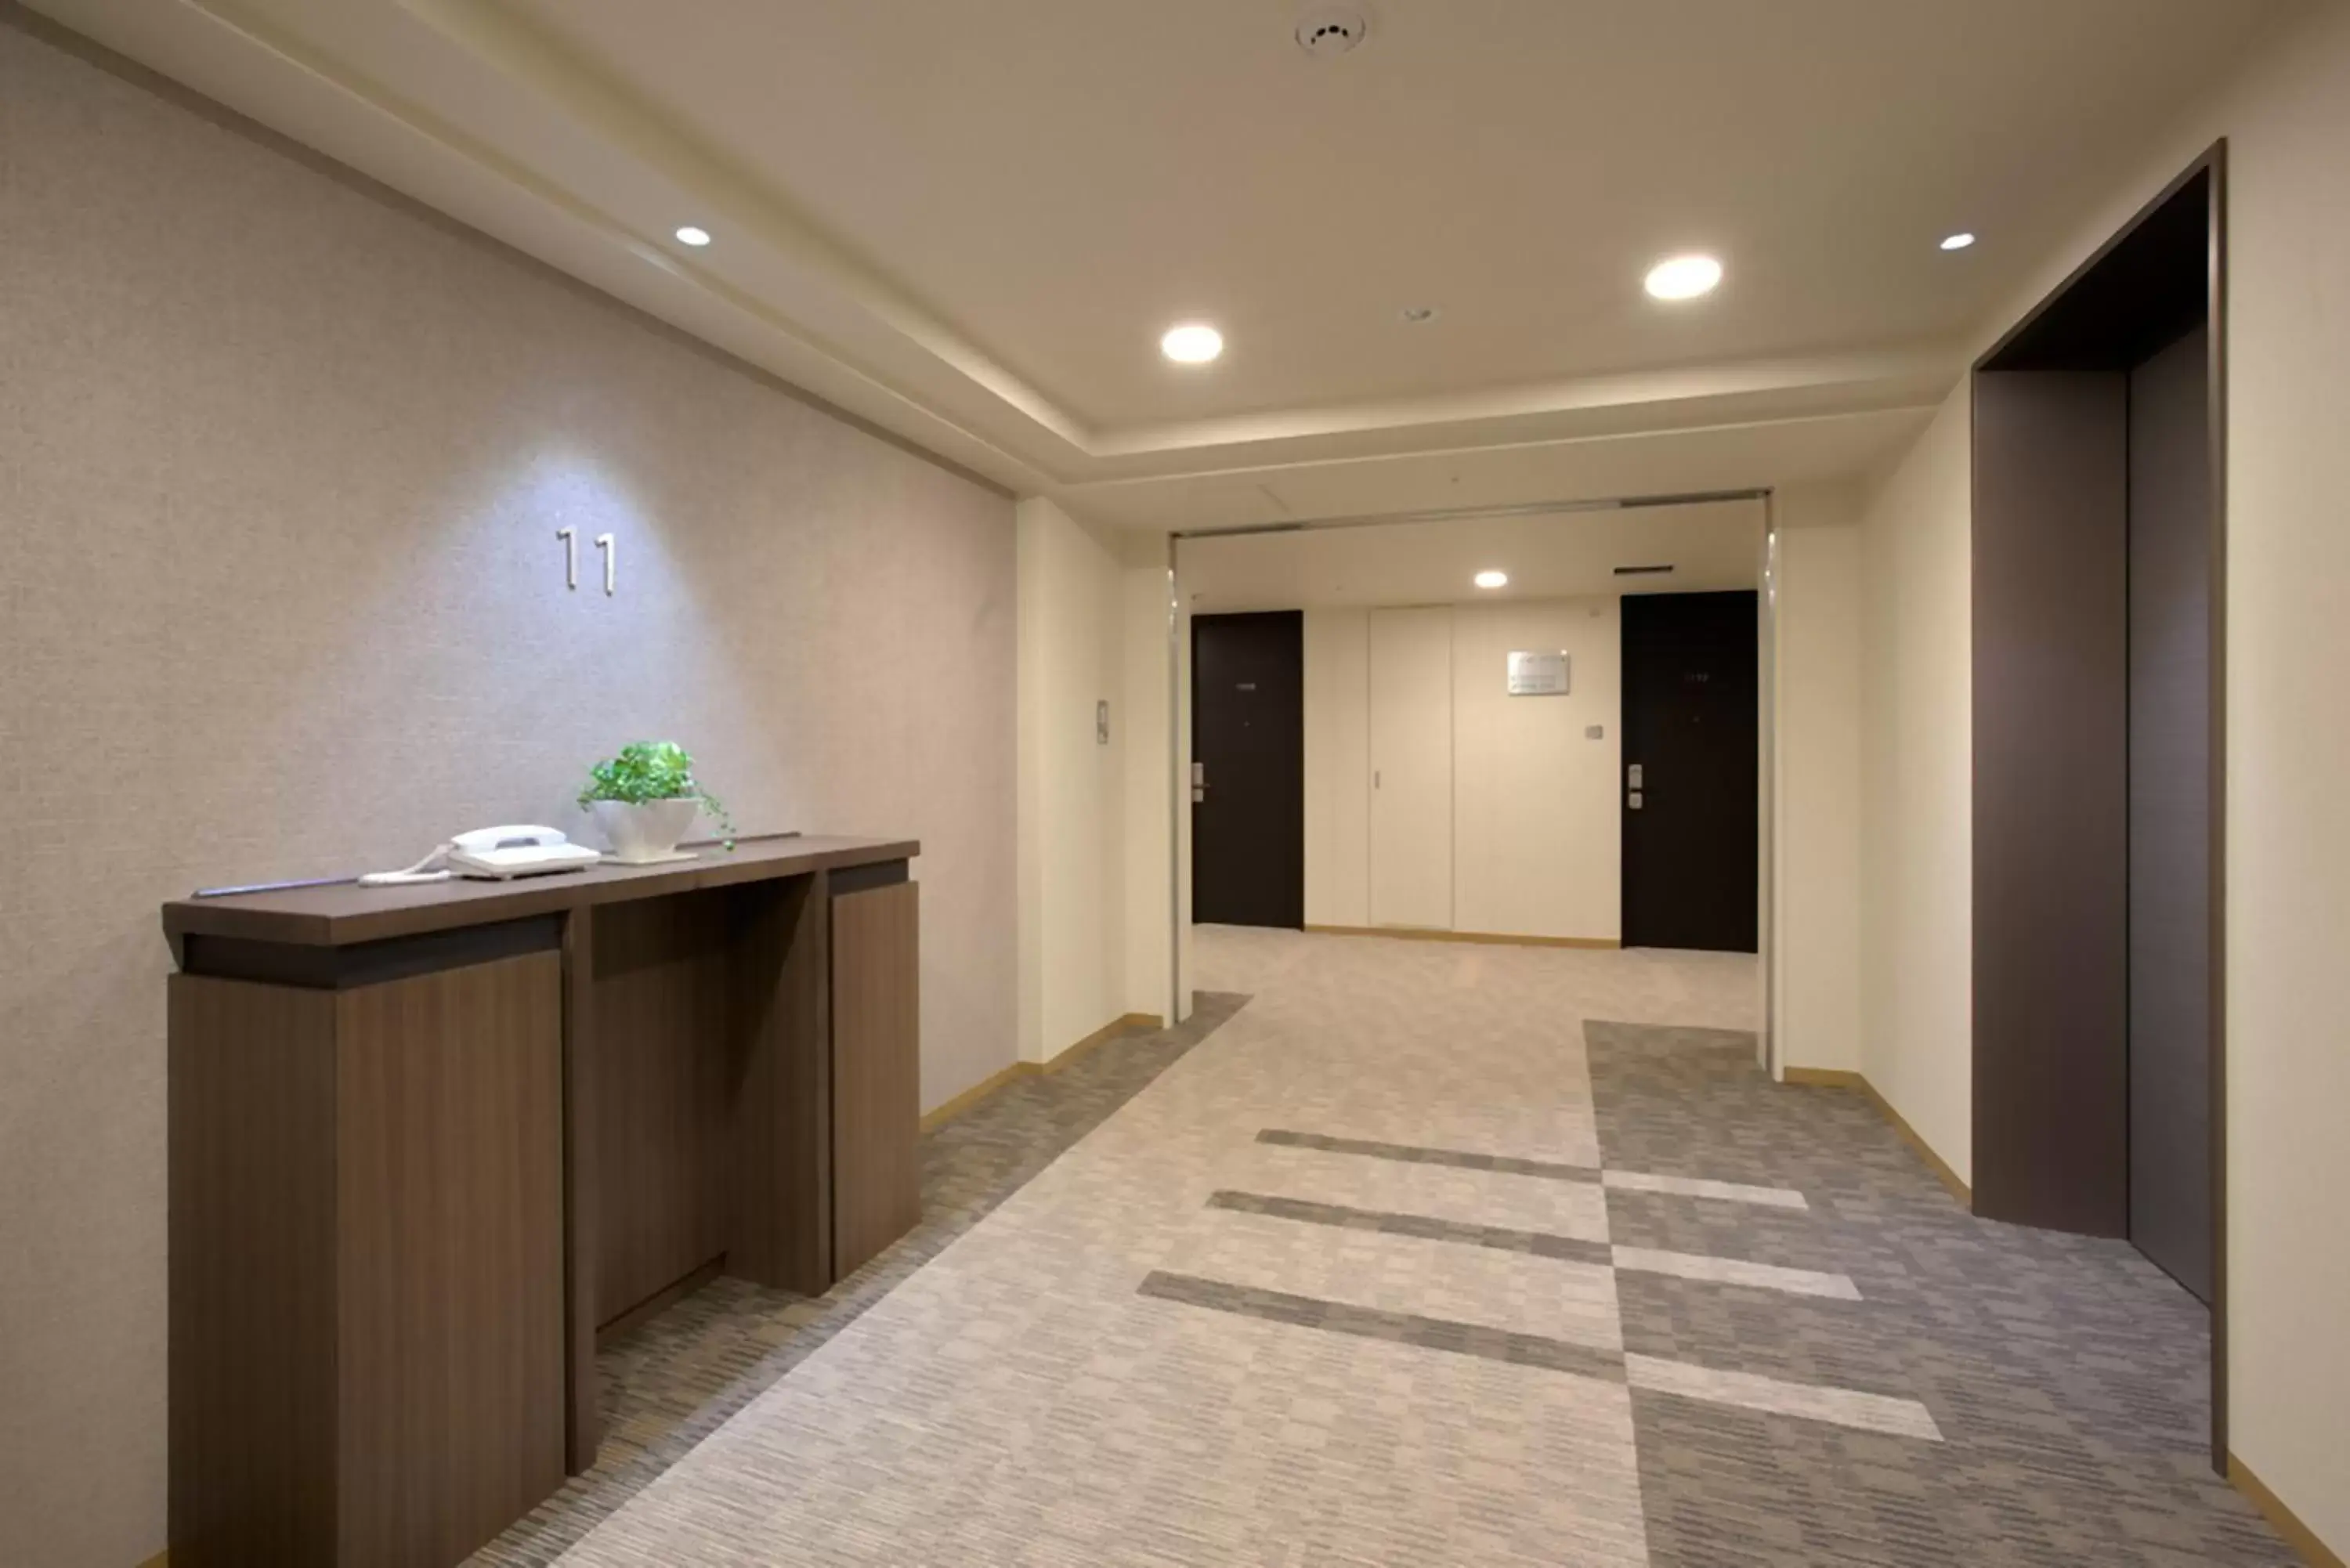 Area and facilities in Daiwa Roynet Hotel Hiroshima